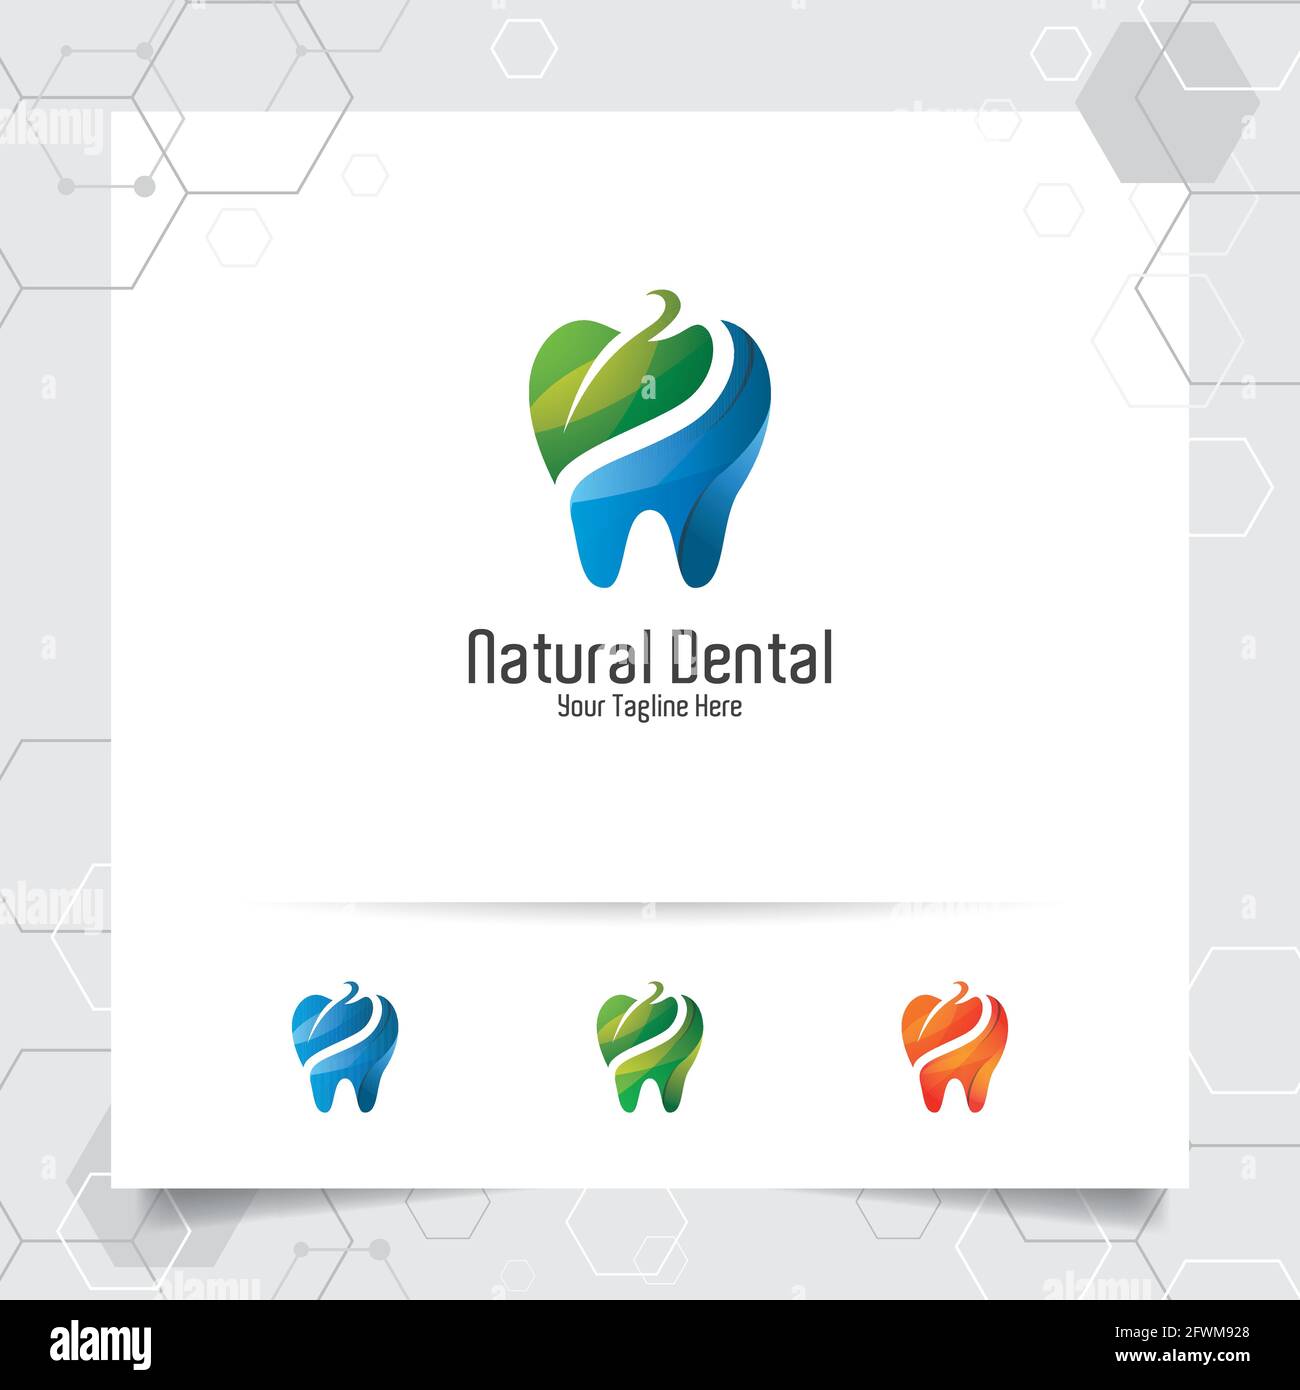 Dental Logo Zahnarzt Vektor-Design mit Konzept der grünen Blätter und Zahn-Symbol . Zahnärztliche Versorgung für Krankenhaus, Arzt, Klinik und Gesundheit. Stock Vektor